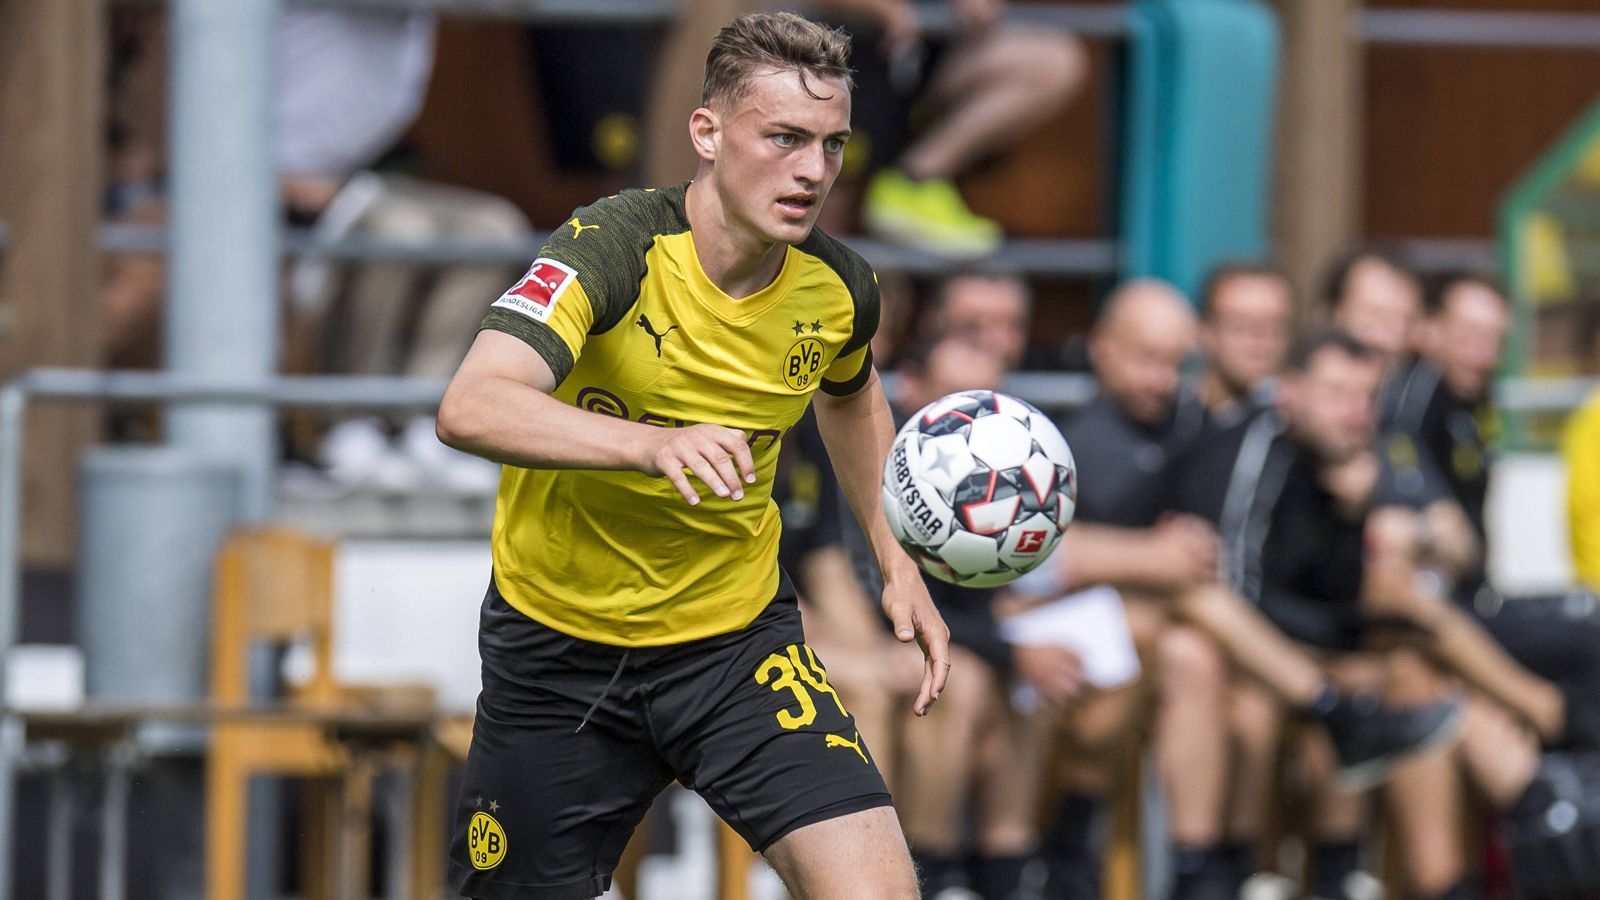 
                <strong>Jacob Bruun Larsen: Dortmunds Durchstarter</strong><br>
                Er ist die Entdeckung der Vorbereitung von Borussia Dortmund: Jacob Bruun Larsen hat sich unter dem neuen Trainer Lucien Favre in den Fokus gespielt. Doch wer ist das überhaupt? ran.de stellt den Dortmunder Durchstarter vor.
              